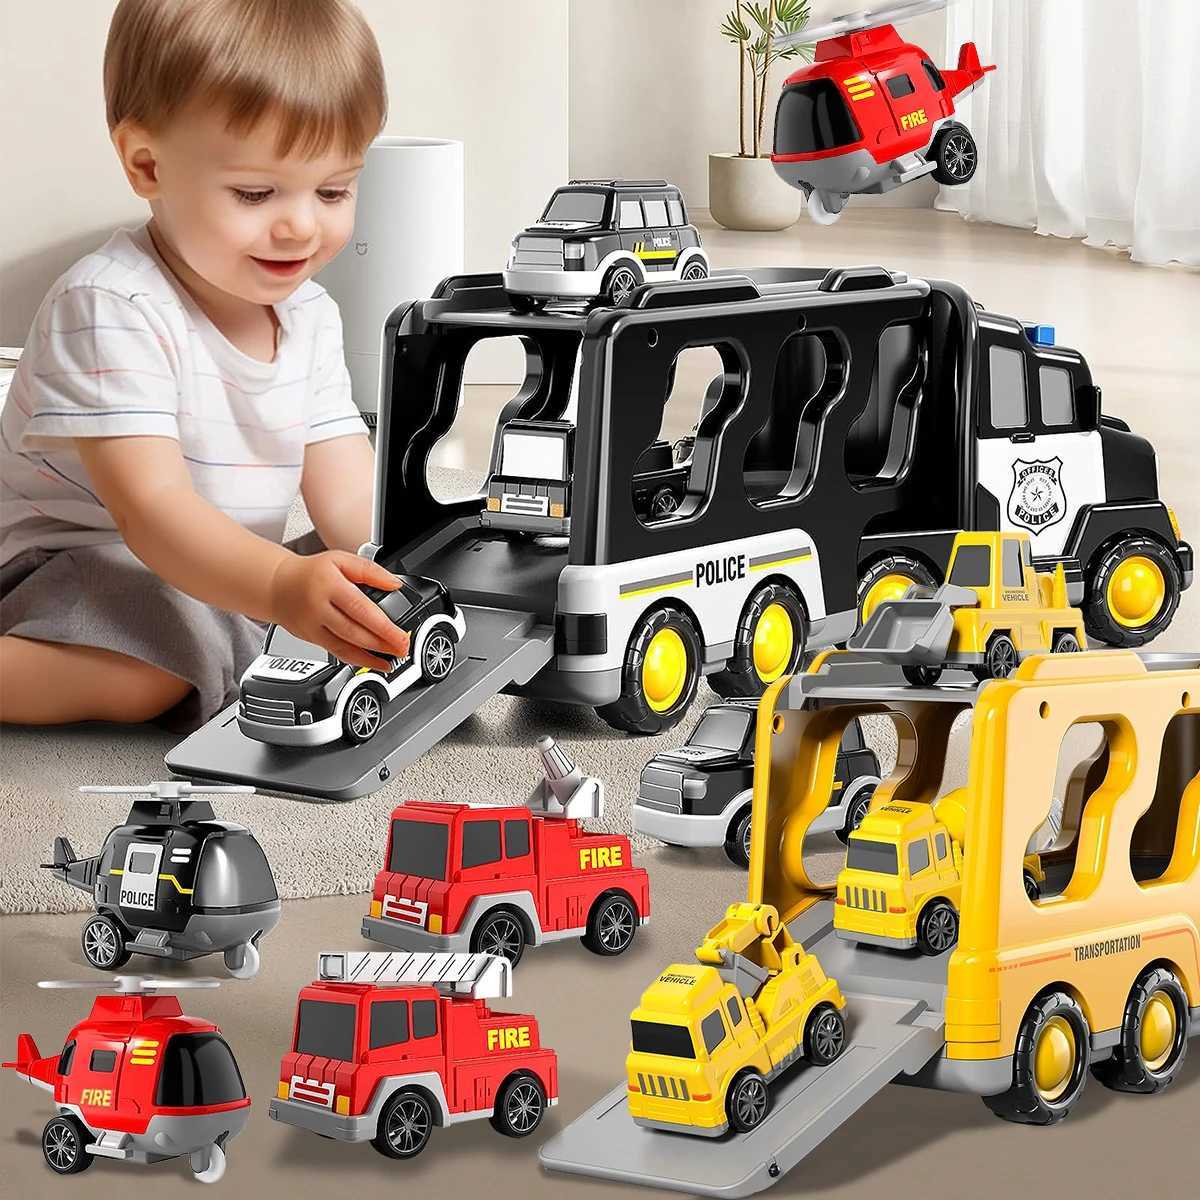 Modèles réduits de voitures moulés sous pression camion de pompier voiture jouets véhicules d'ingénierie pelle Bulldozer camion modèle ensembles enfants garçons pour jouets cadeau L231114